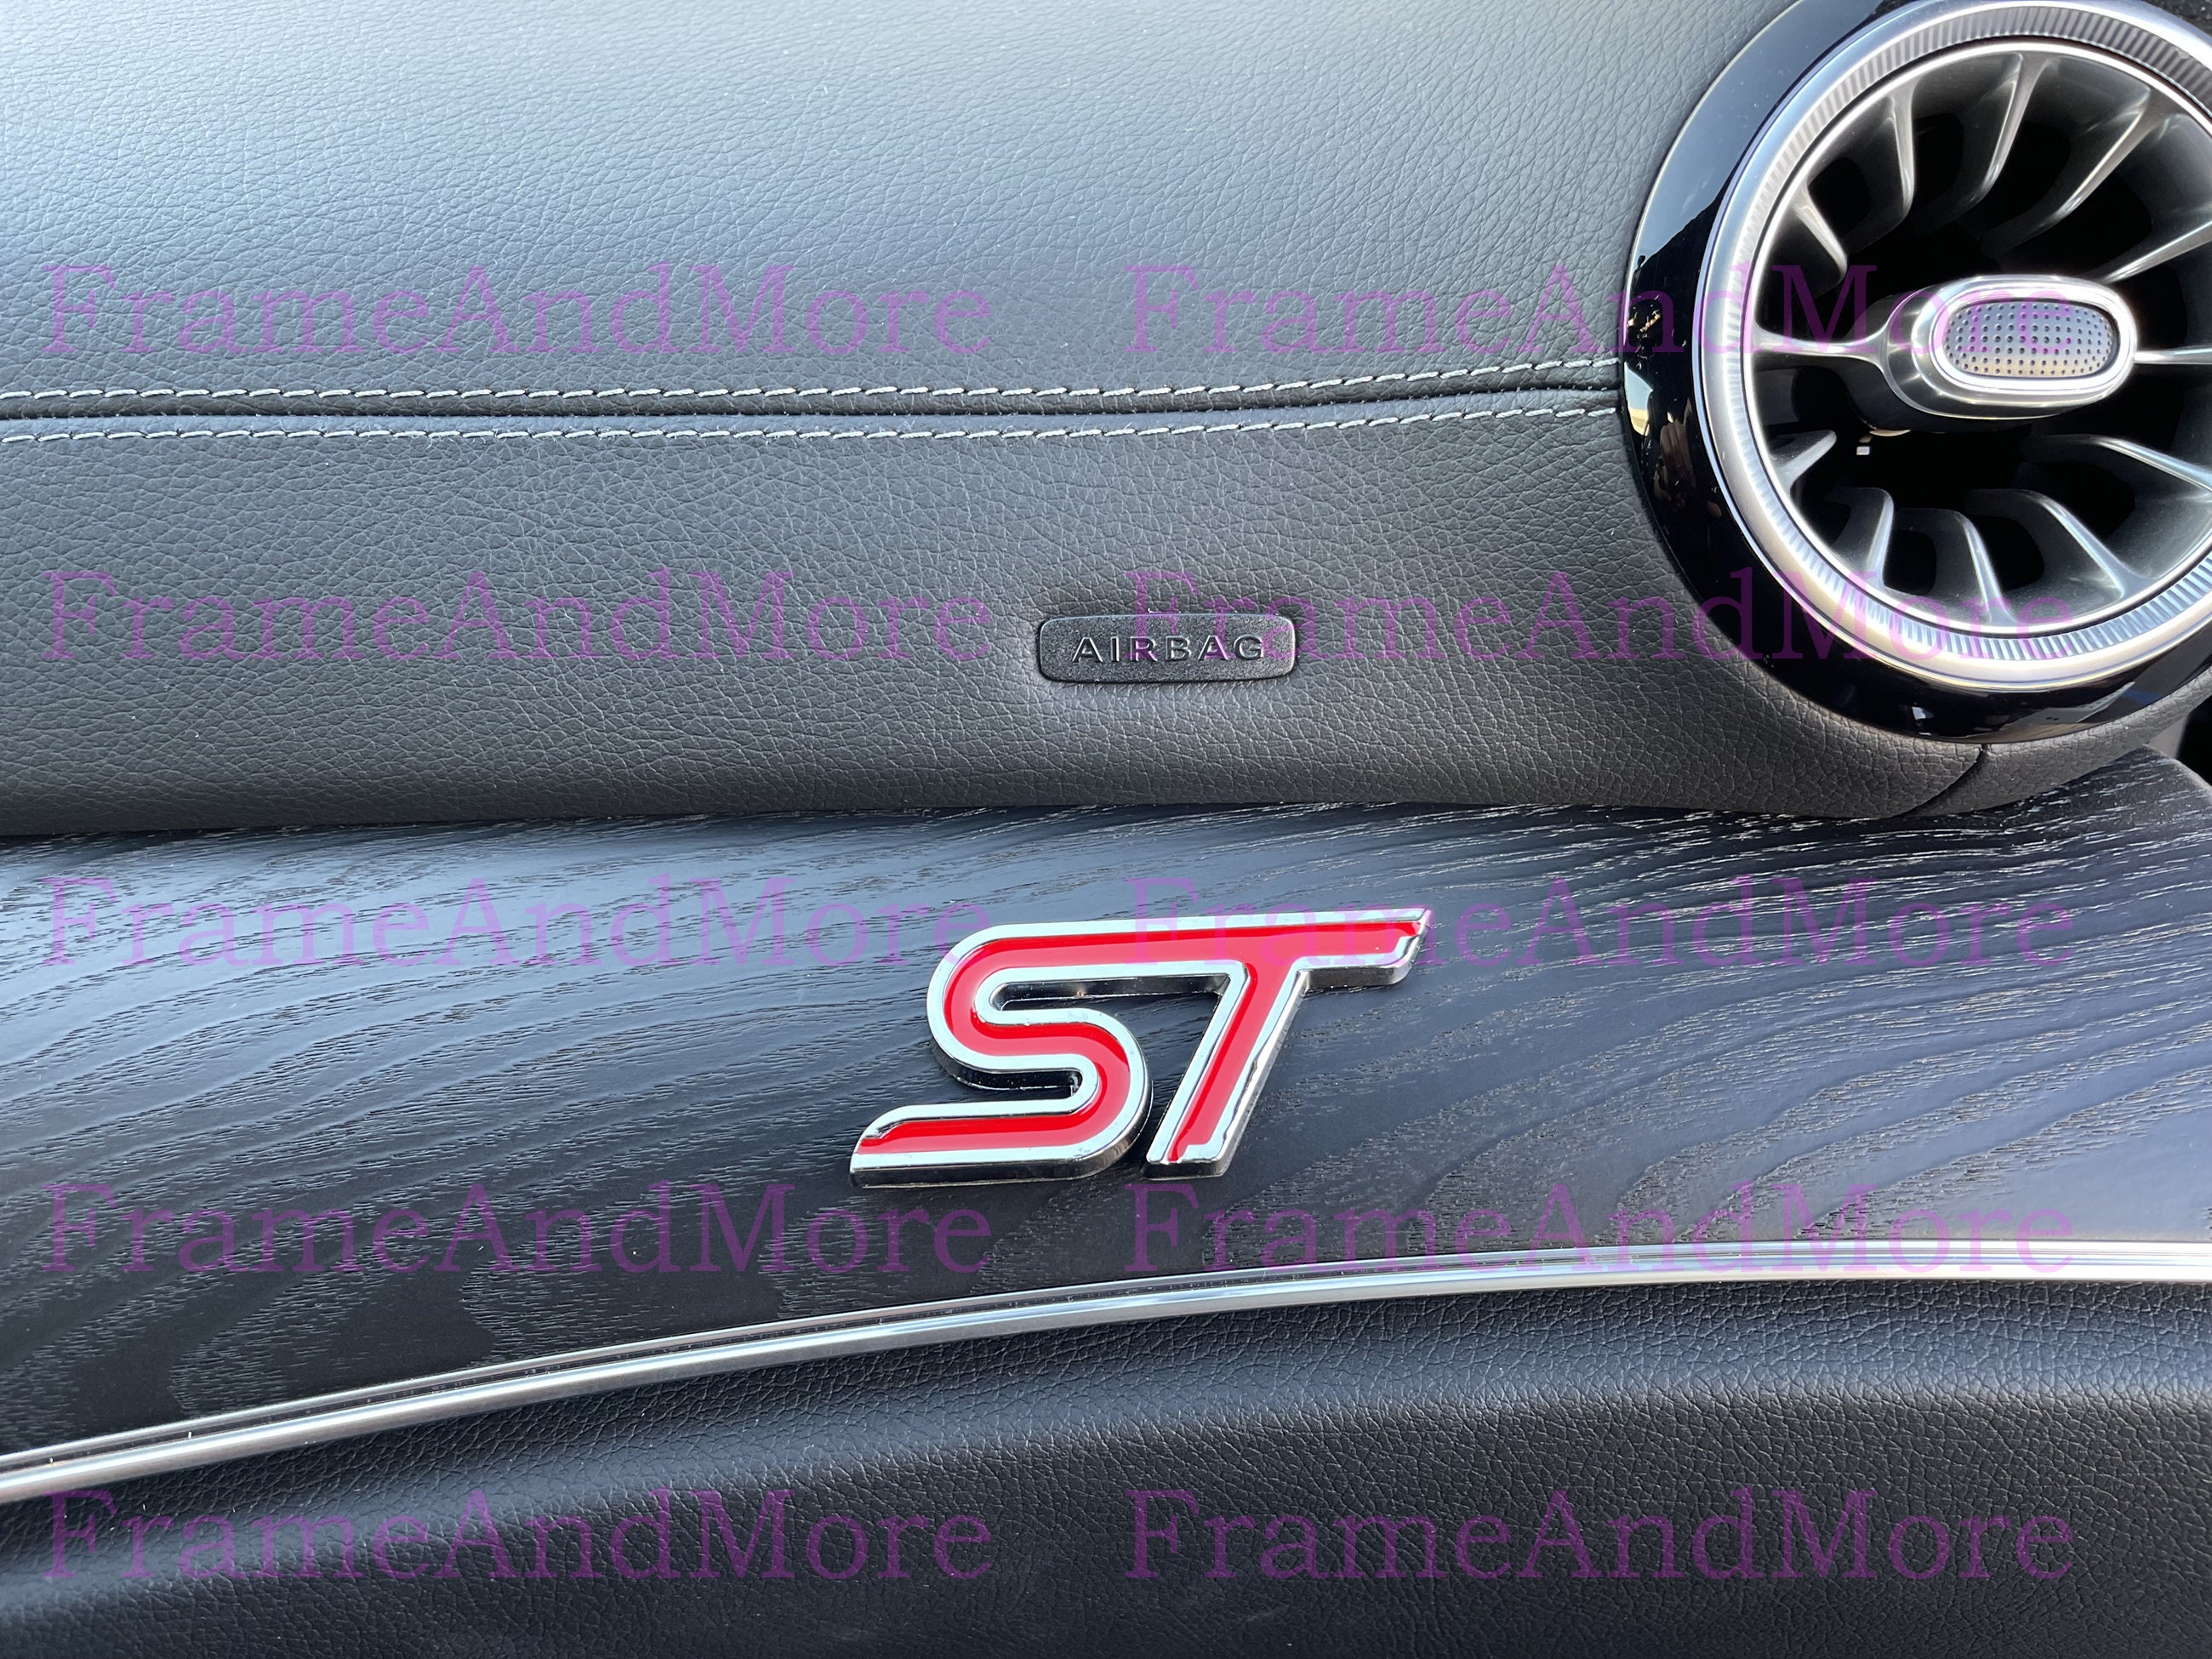 2 Black St Badge 3d Metal Emblem For Ford Fiesta Focus St-line